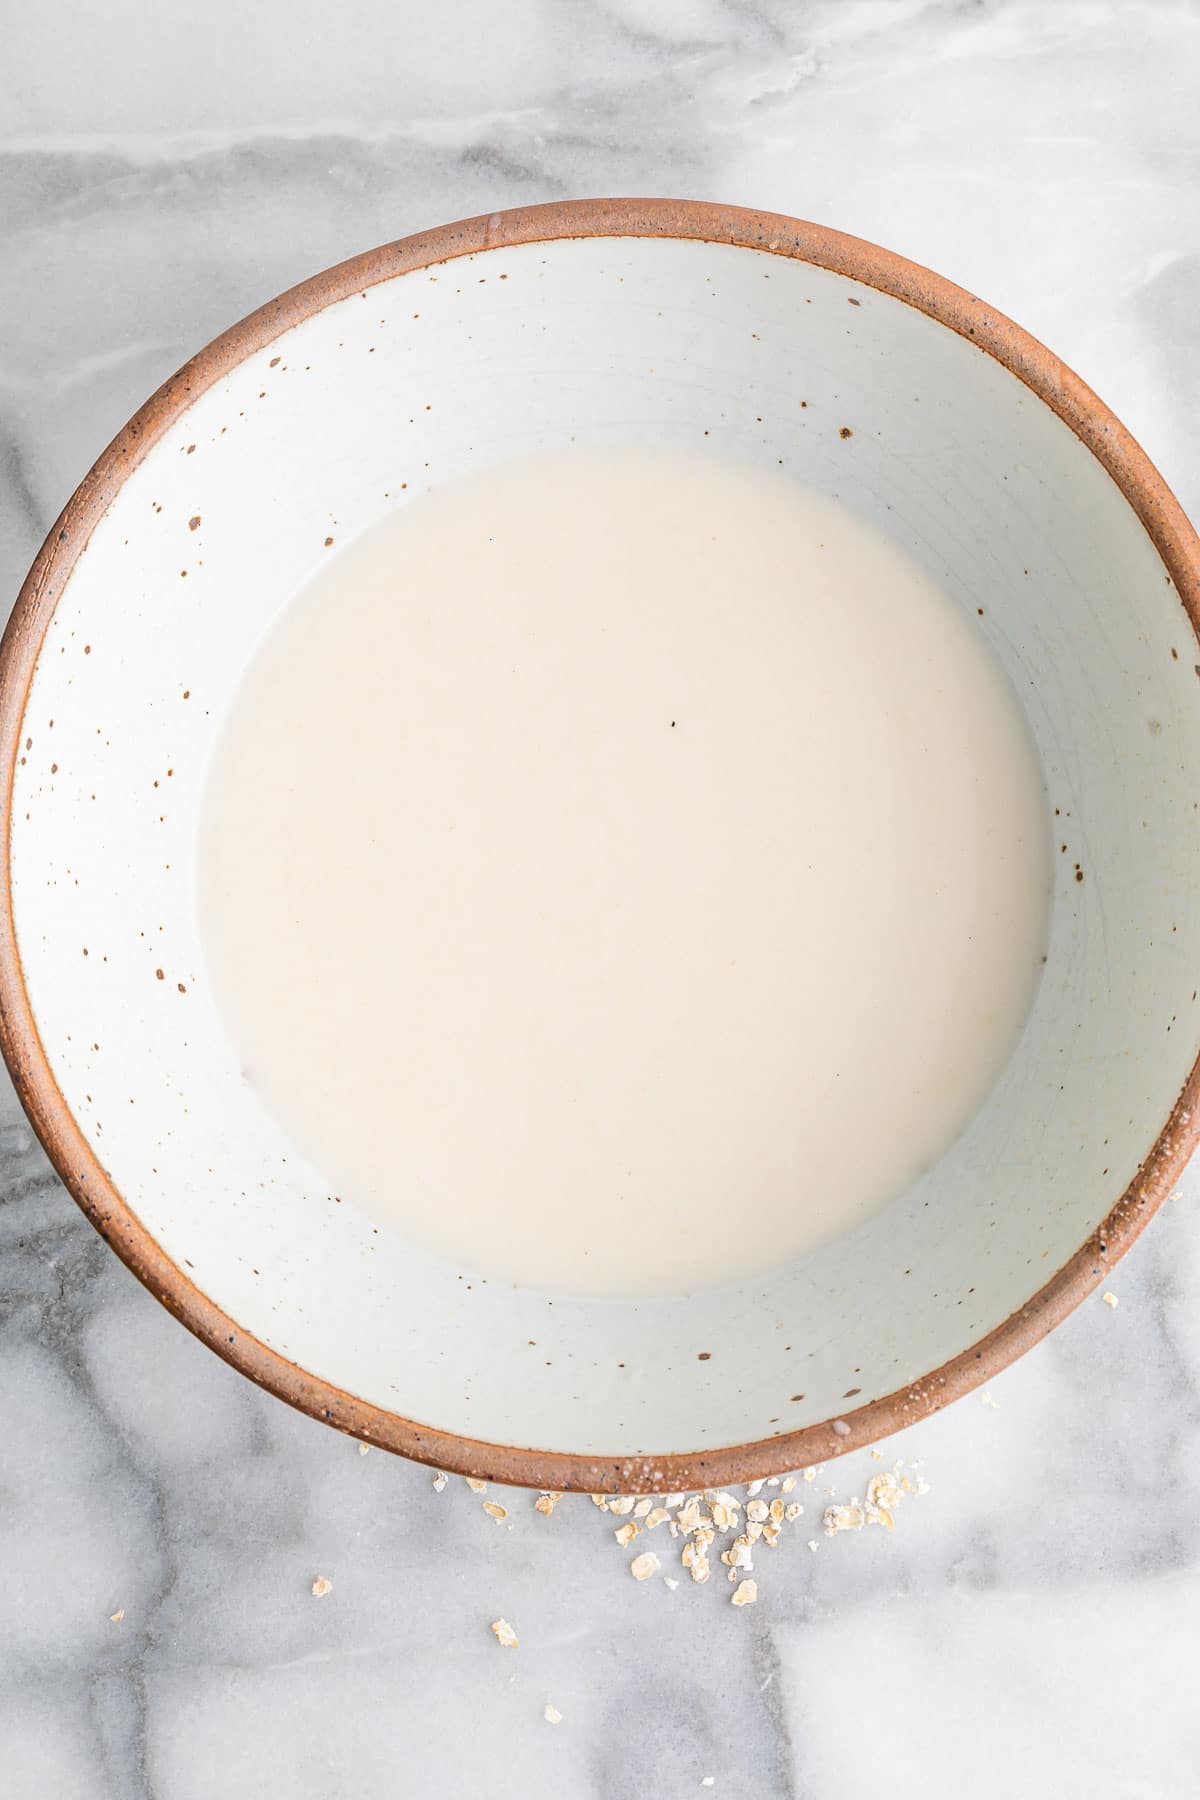 oat milk in a bowl